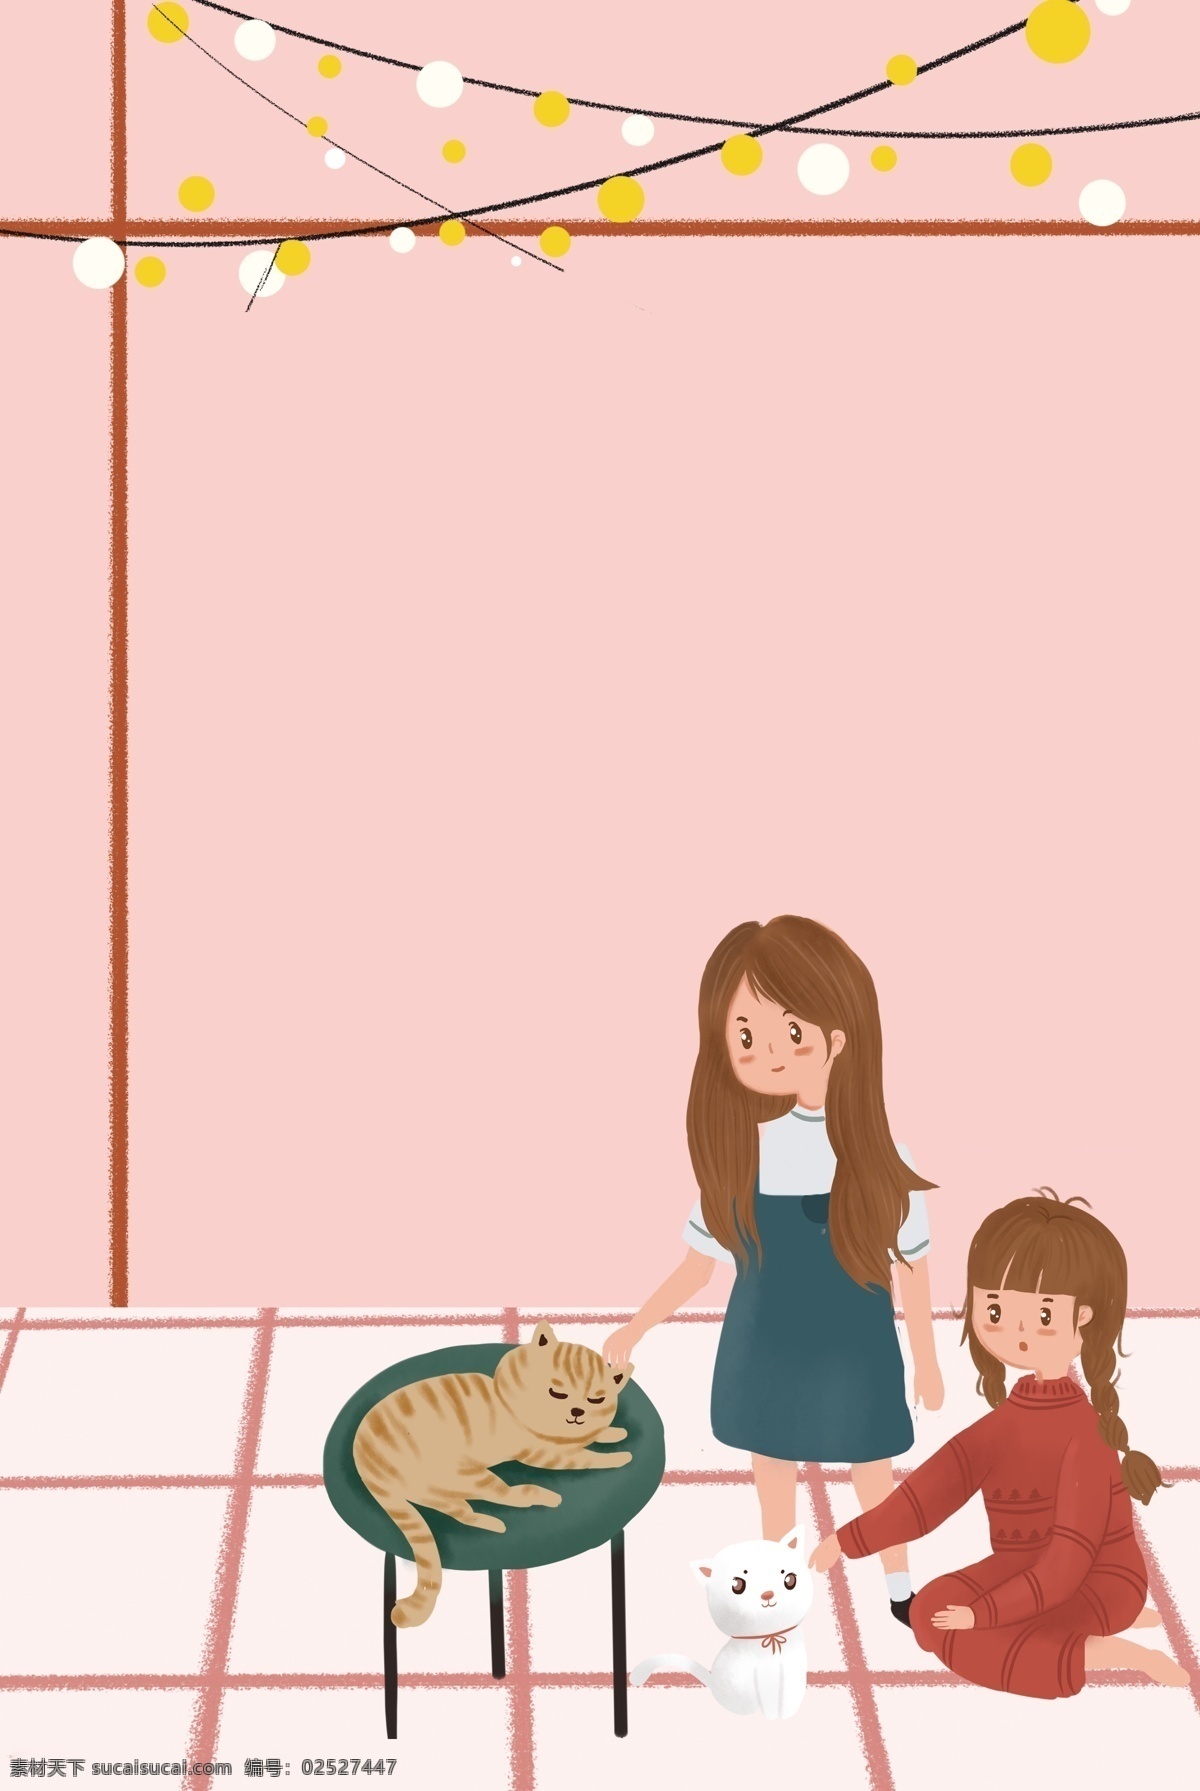 女生 节 猫 咖 商店 家居 插画 海报 女生节 购物 狂欢 人物 上新 插画风 促销海报